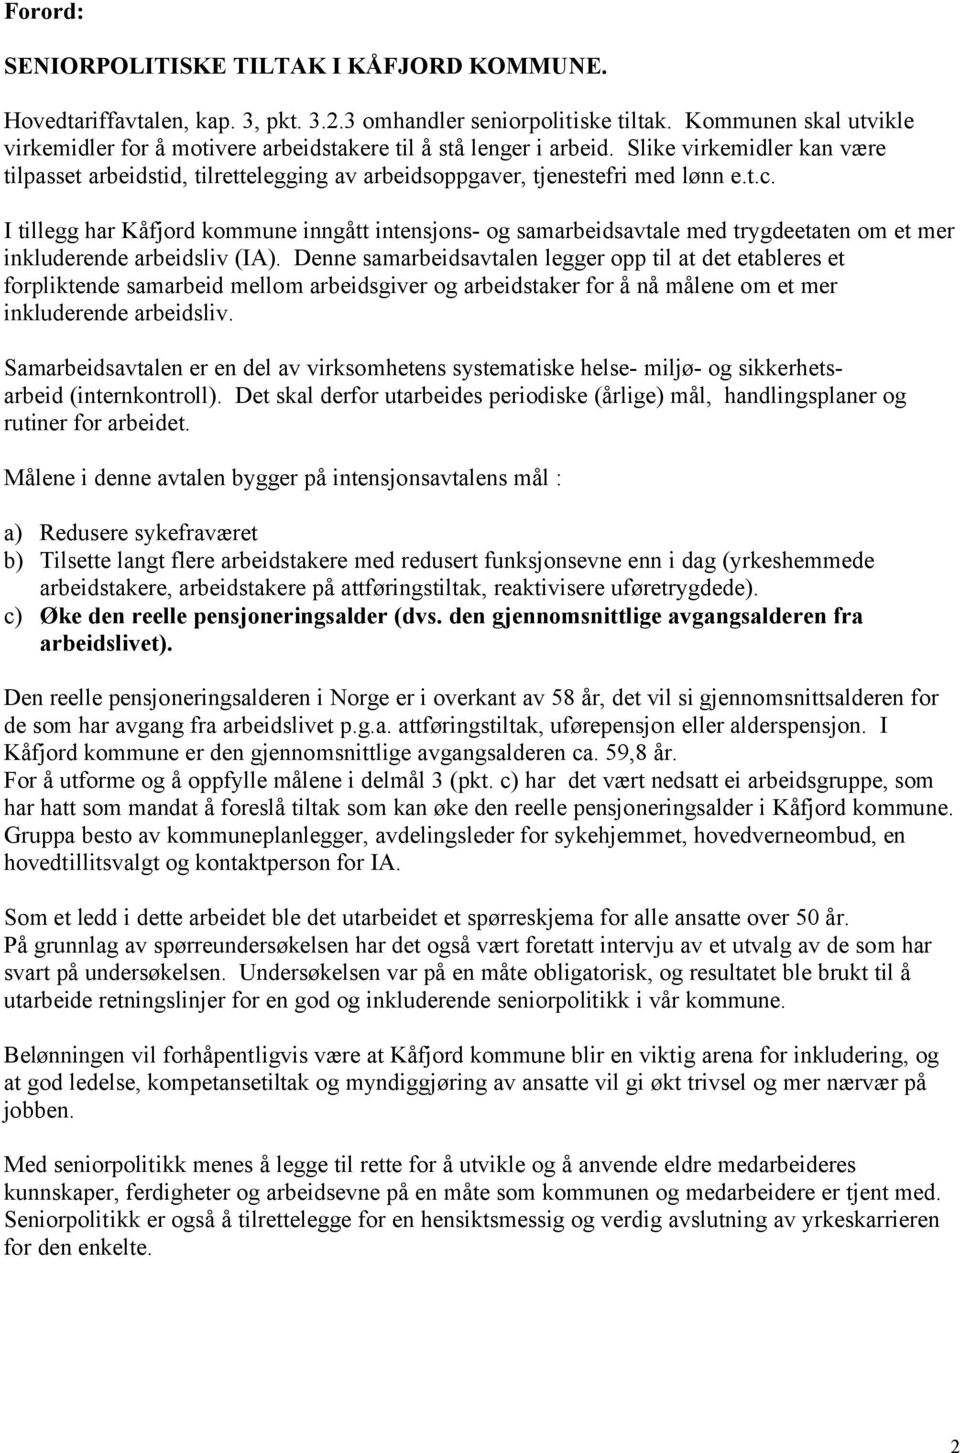 I tillegg har Kåfjord kommune inngått intensjons- og samarbeidsavtale med trygdeetaten om et mer inkluderende arbeidsliv (IA).